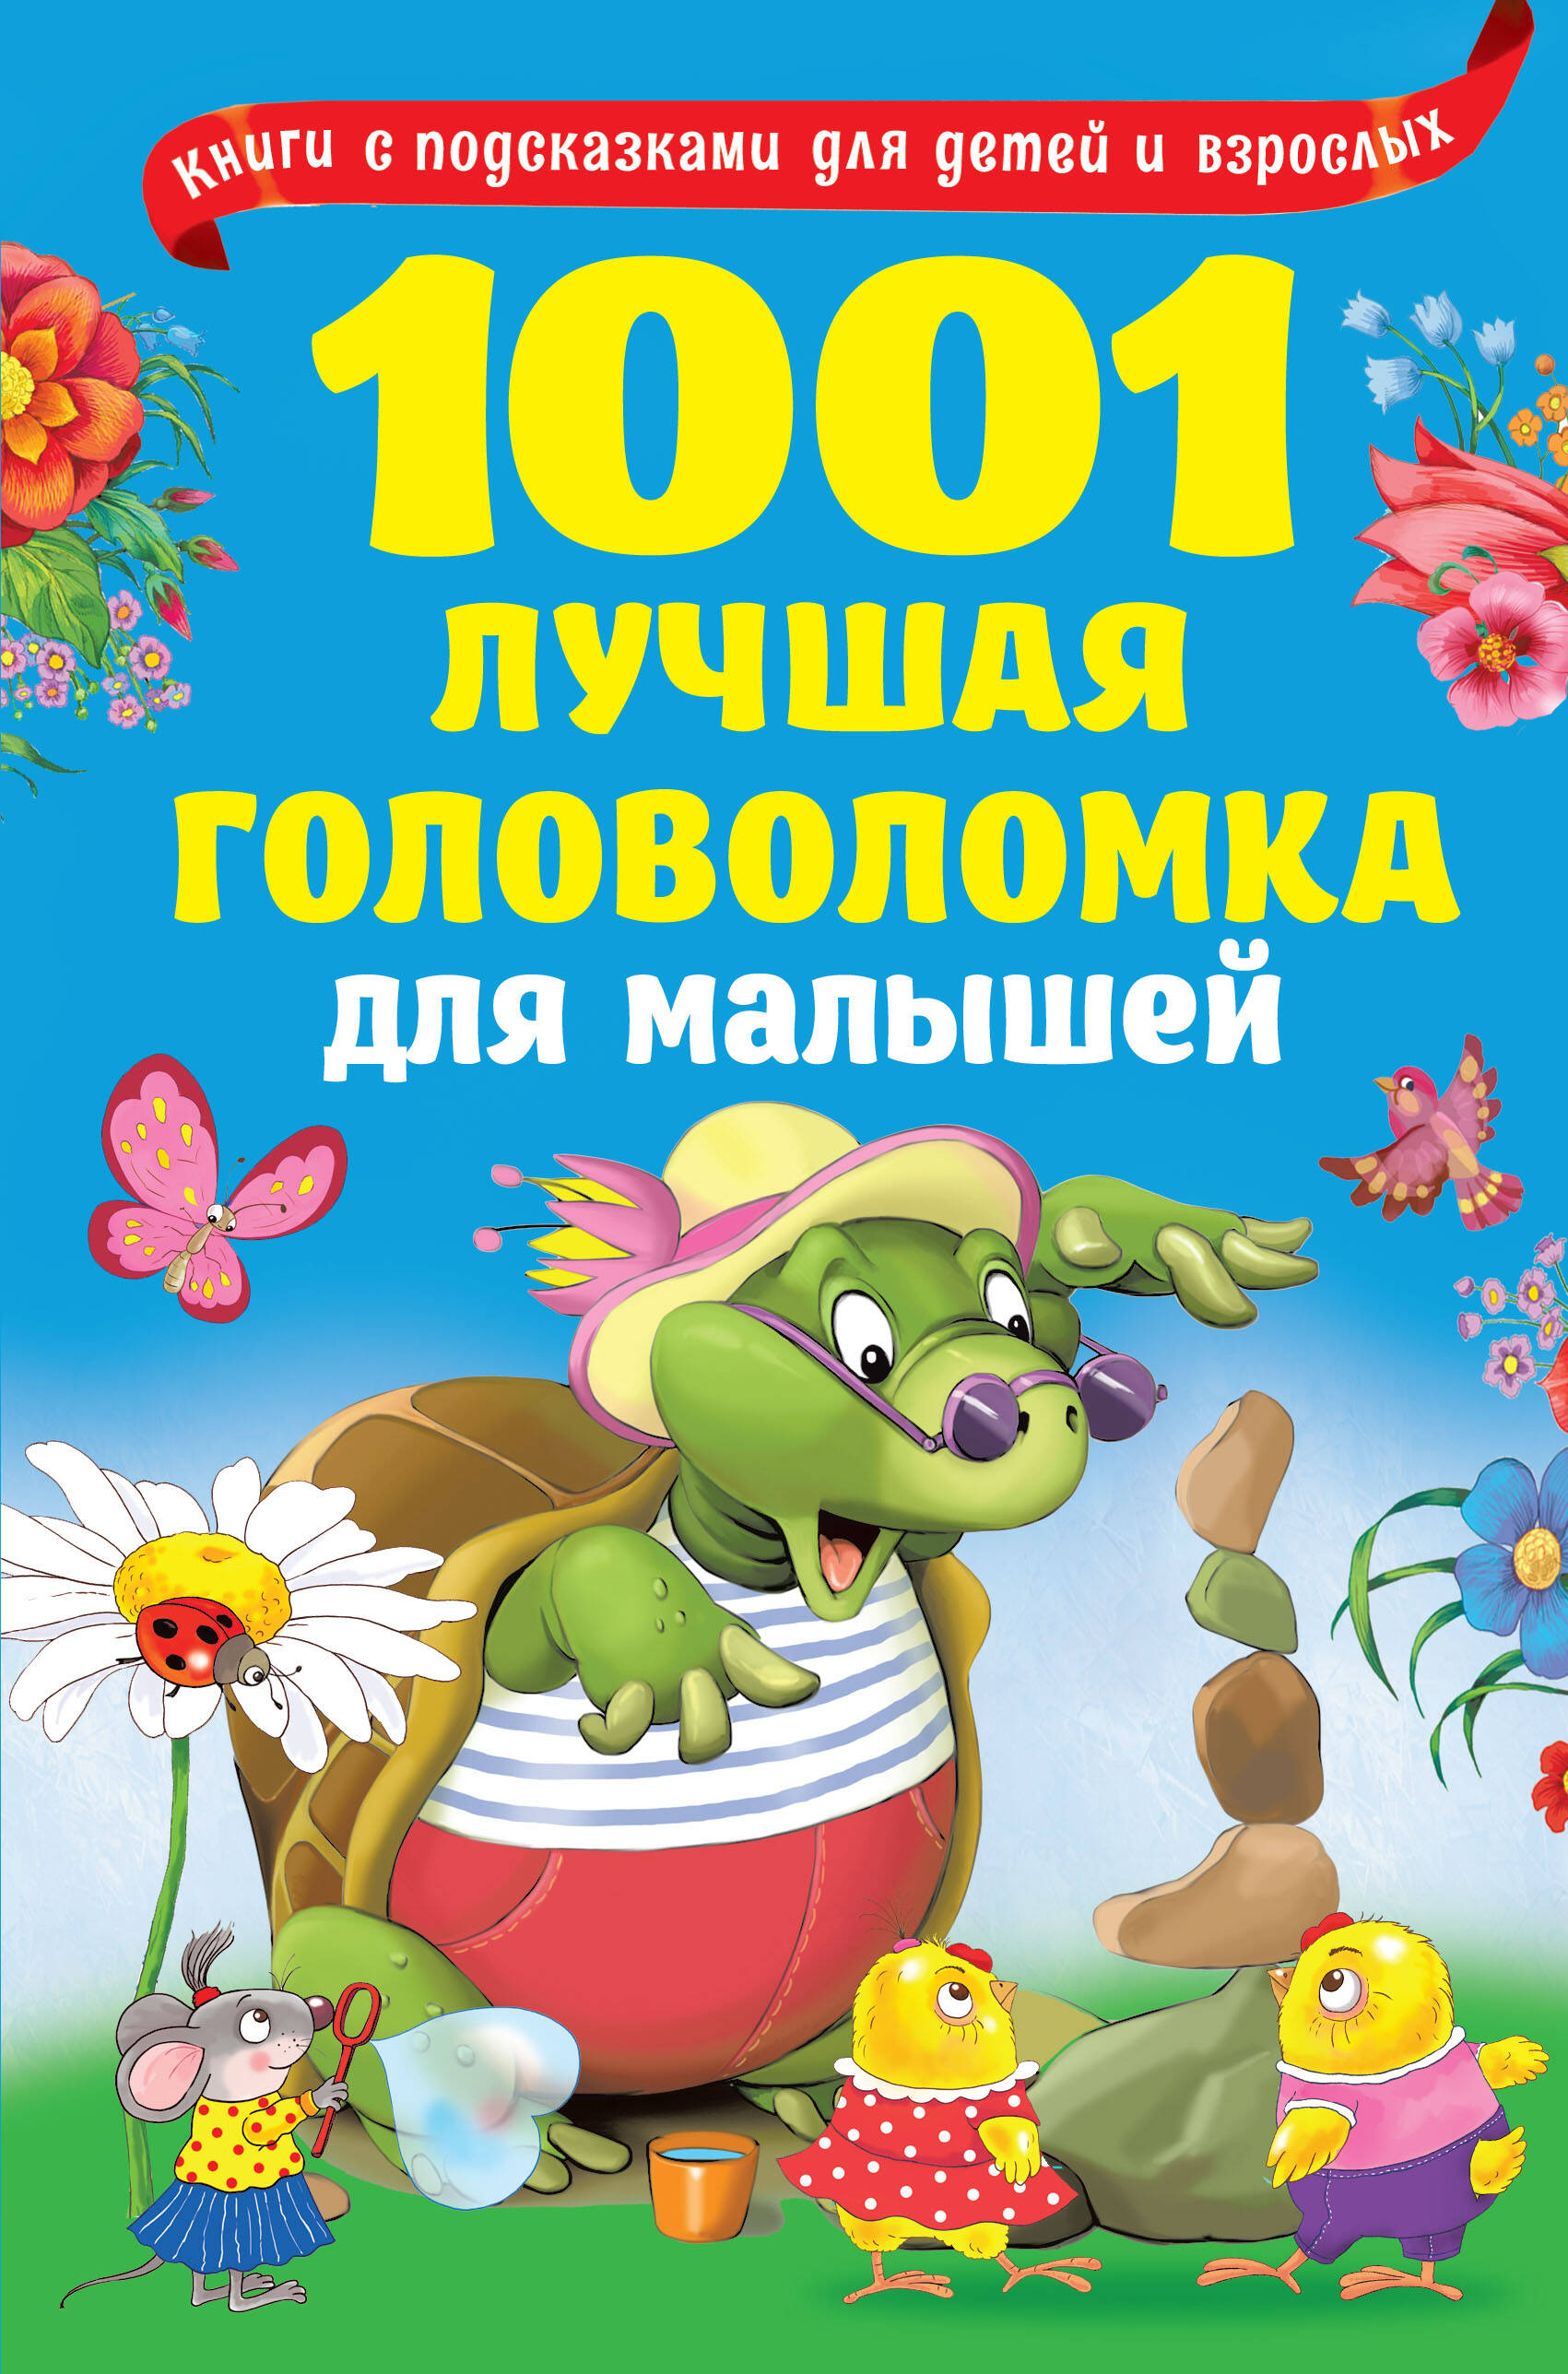 Дмитриева Валентина Геннадьевна - 1001 лучшая головоломка для малышей